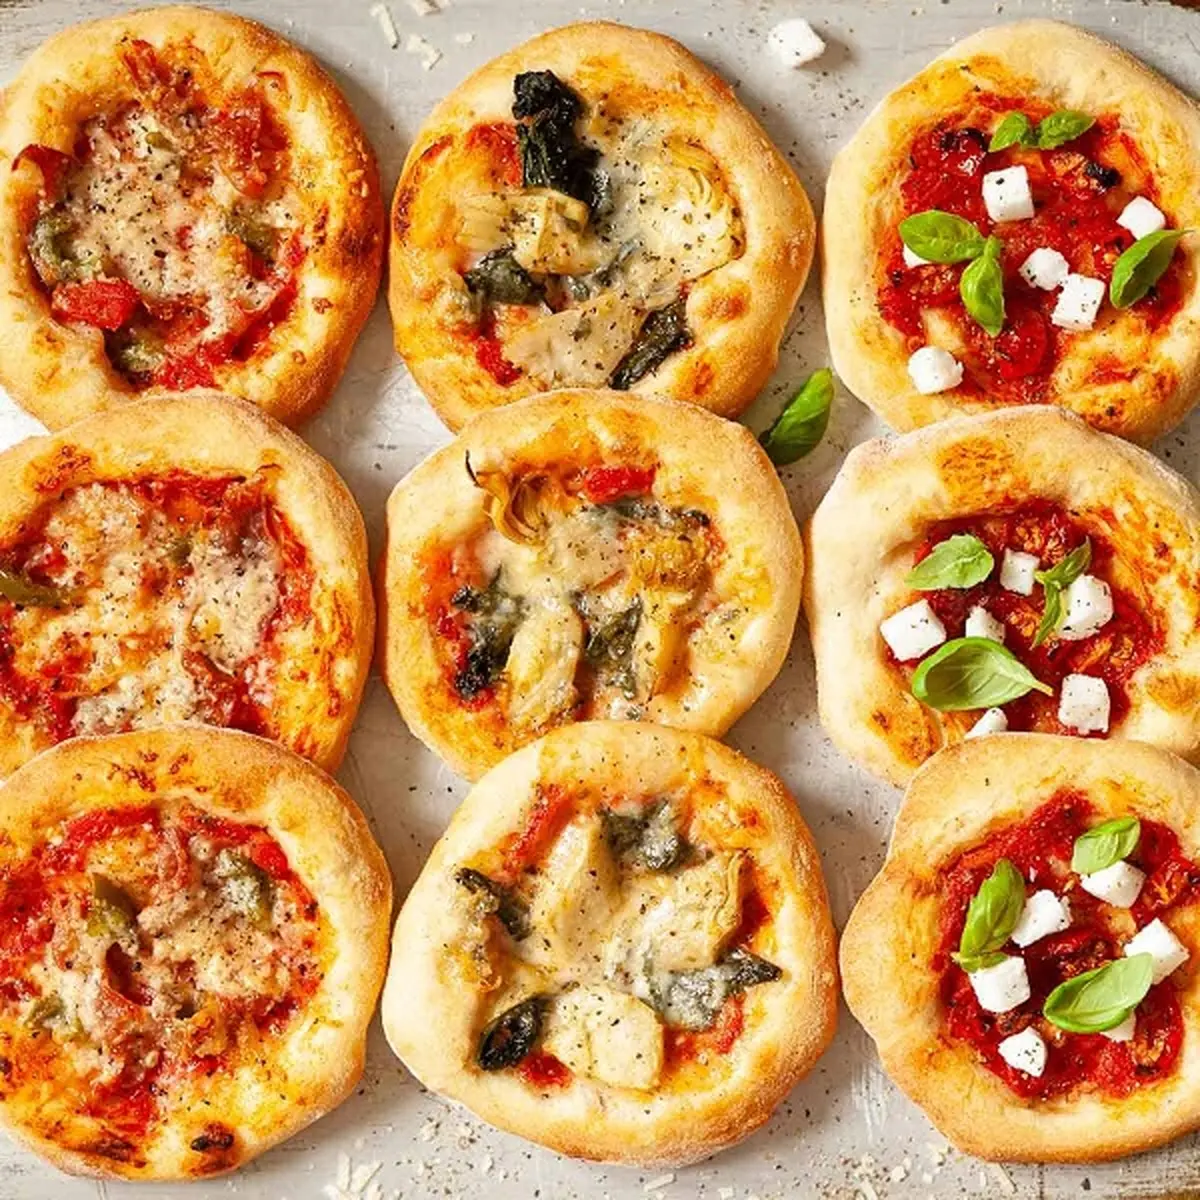 اگر دلت میخواد توی 5 دقیقه یه پیتزای خوشگل و خوشمزه درست کنی، بیا اینجا | مخصوص زمانی که عجله داری و گشنته! | طرز تهیه پیتزا مینی فینگر فود + ویدئو